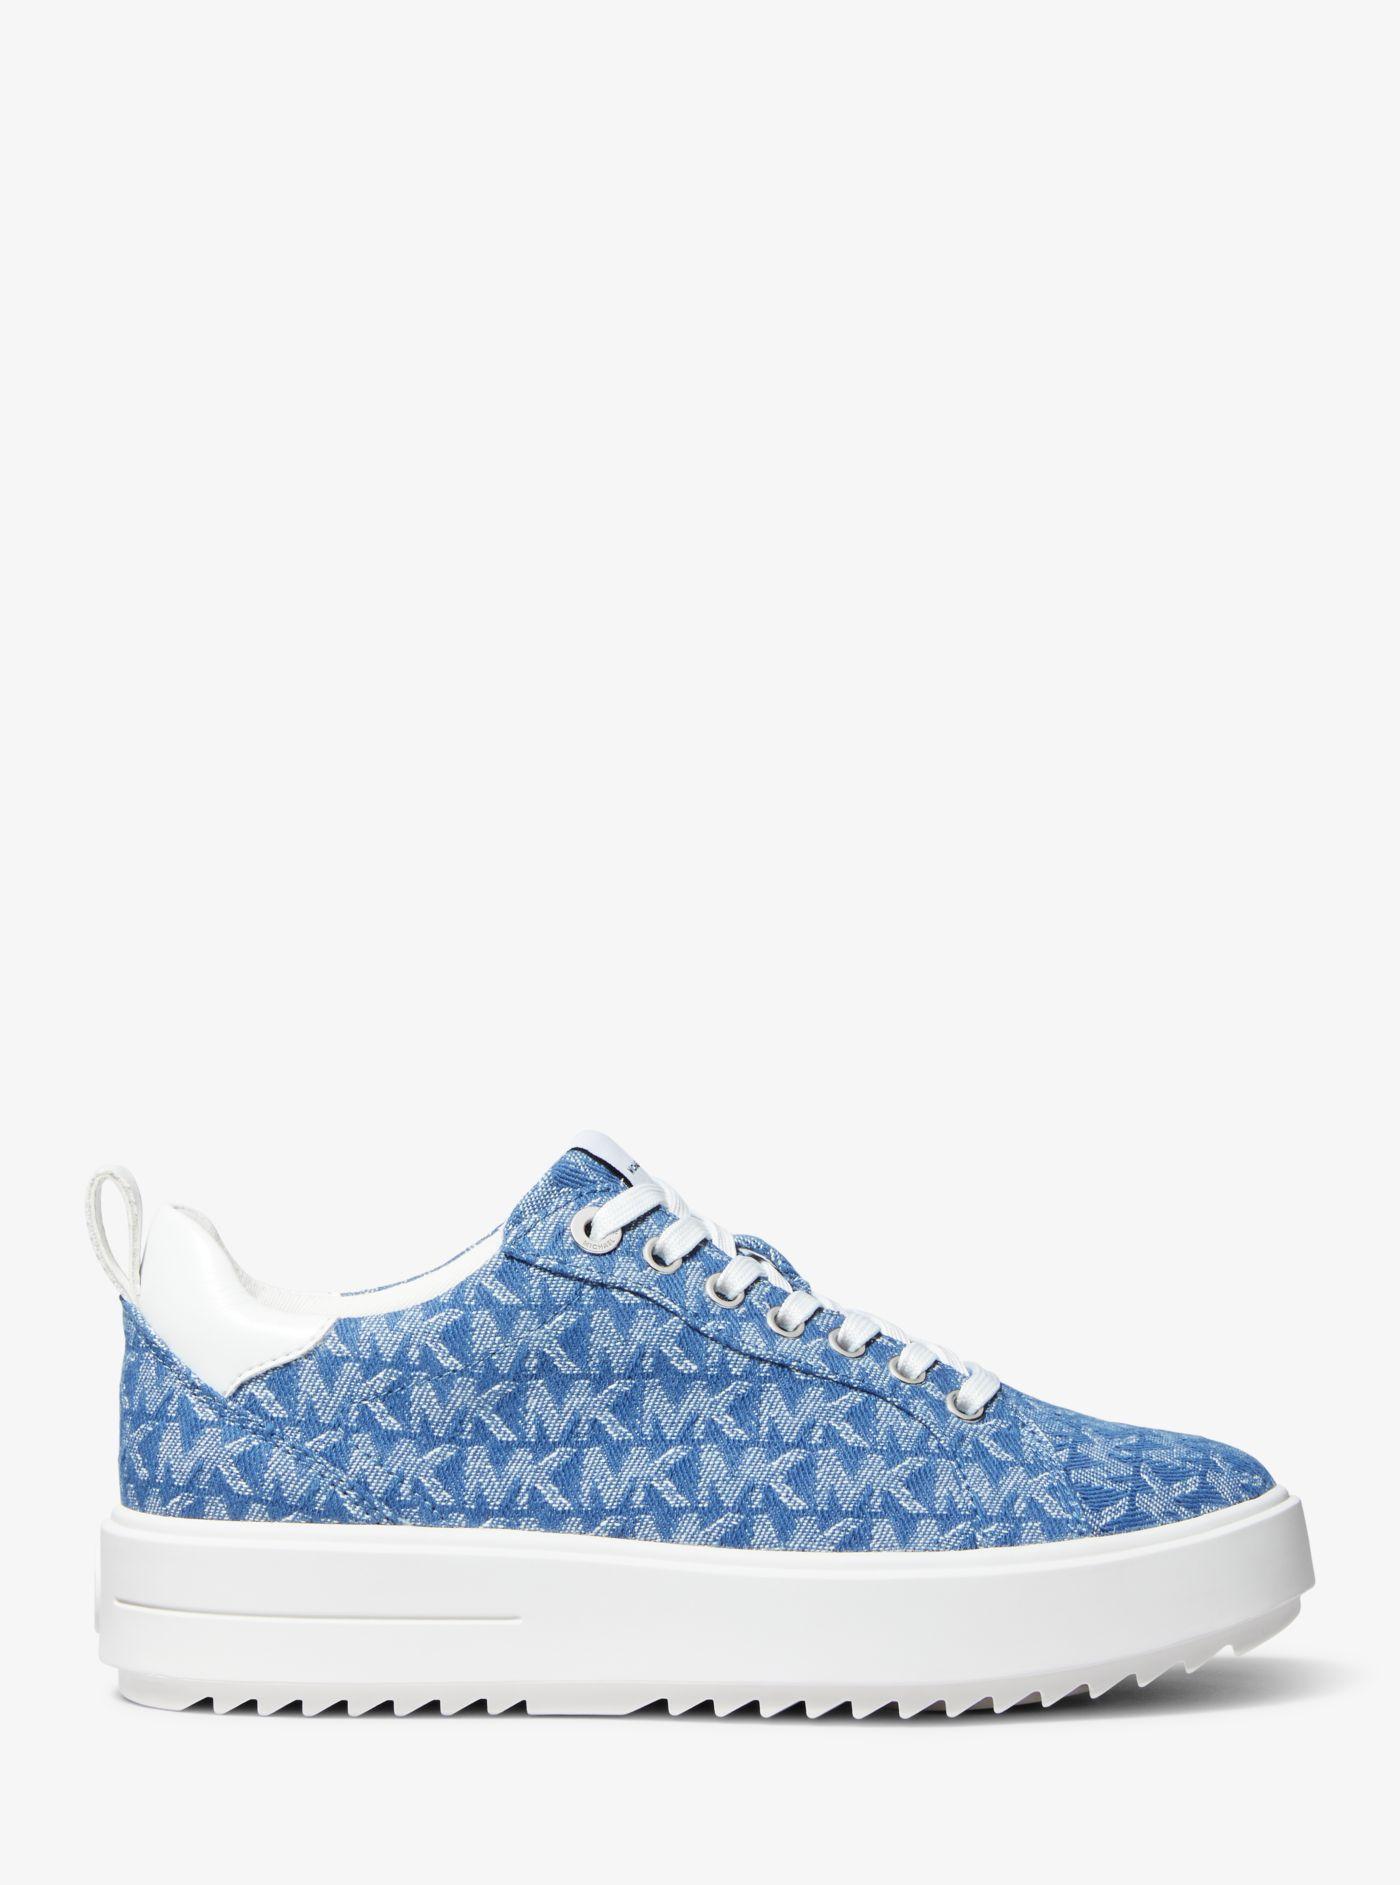 Michael Kors Emmett Denim Jacquard Sneaker in Blue | Lyst